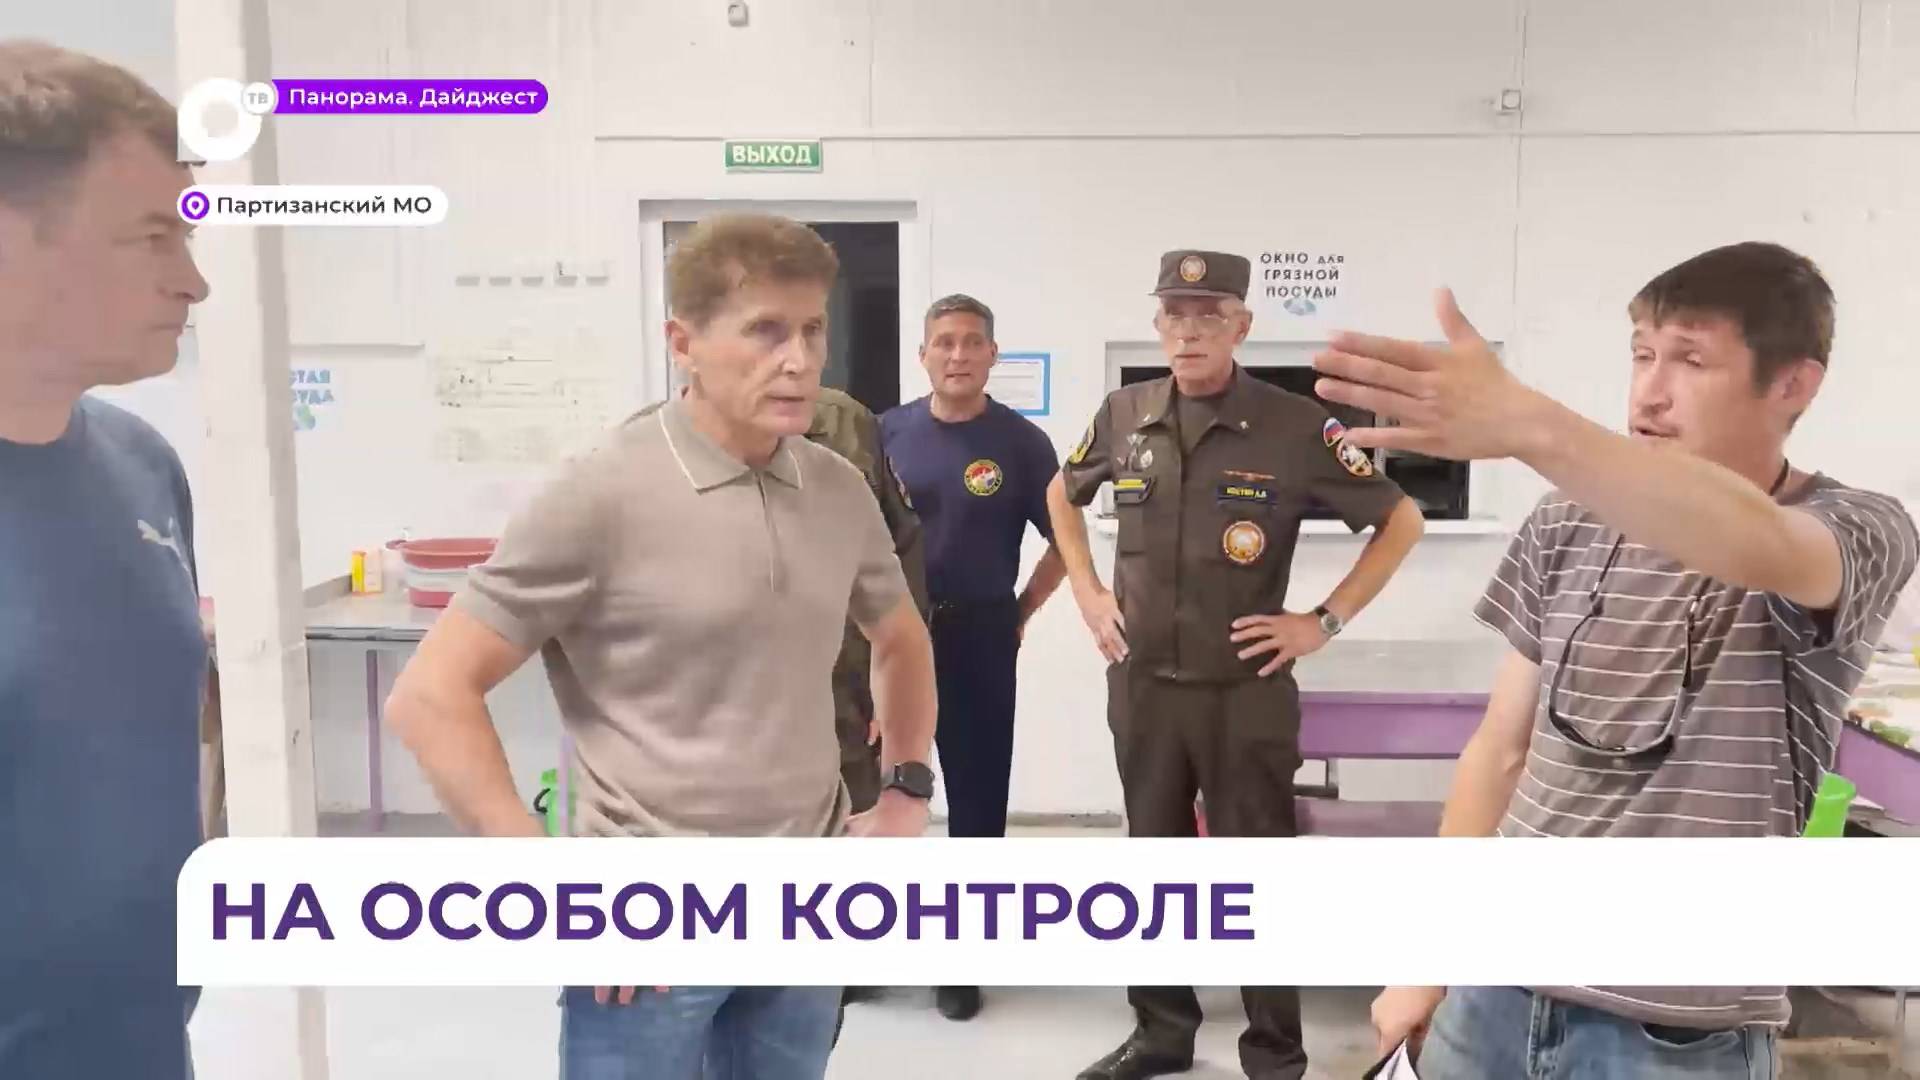 Олег Кожемяко: ситуация в Партизанском муниципальном округе – под контролем